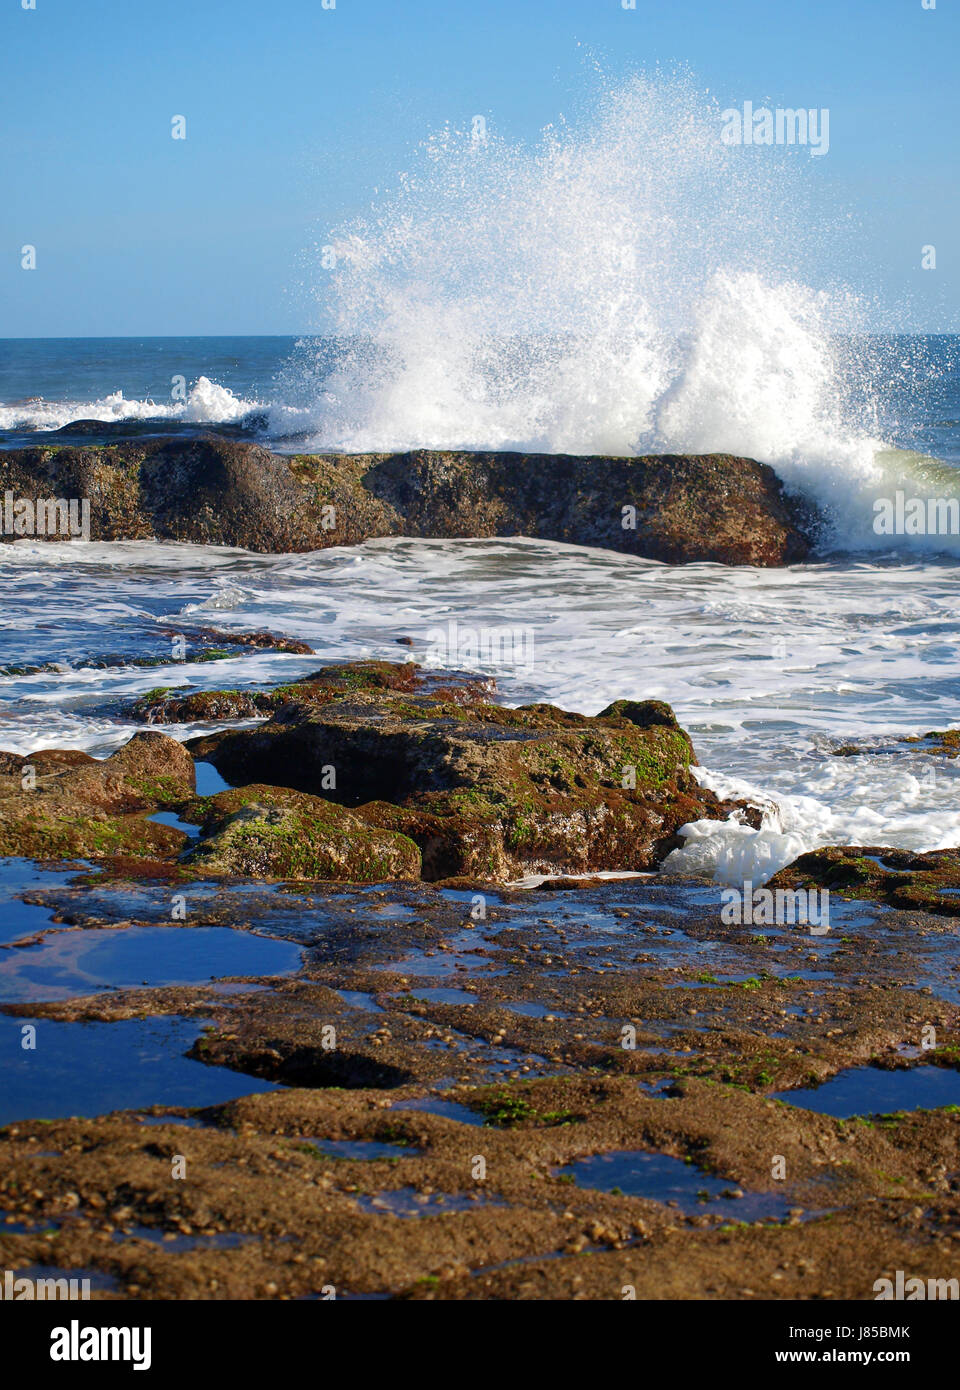 Wellen Küste Spray smash Salzwasser Meer Ozean Wasser weiße Farbe Bali Indonesien Stockfoto